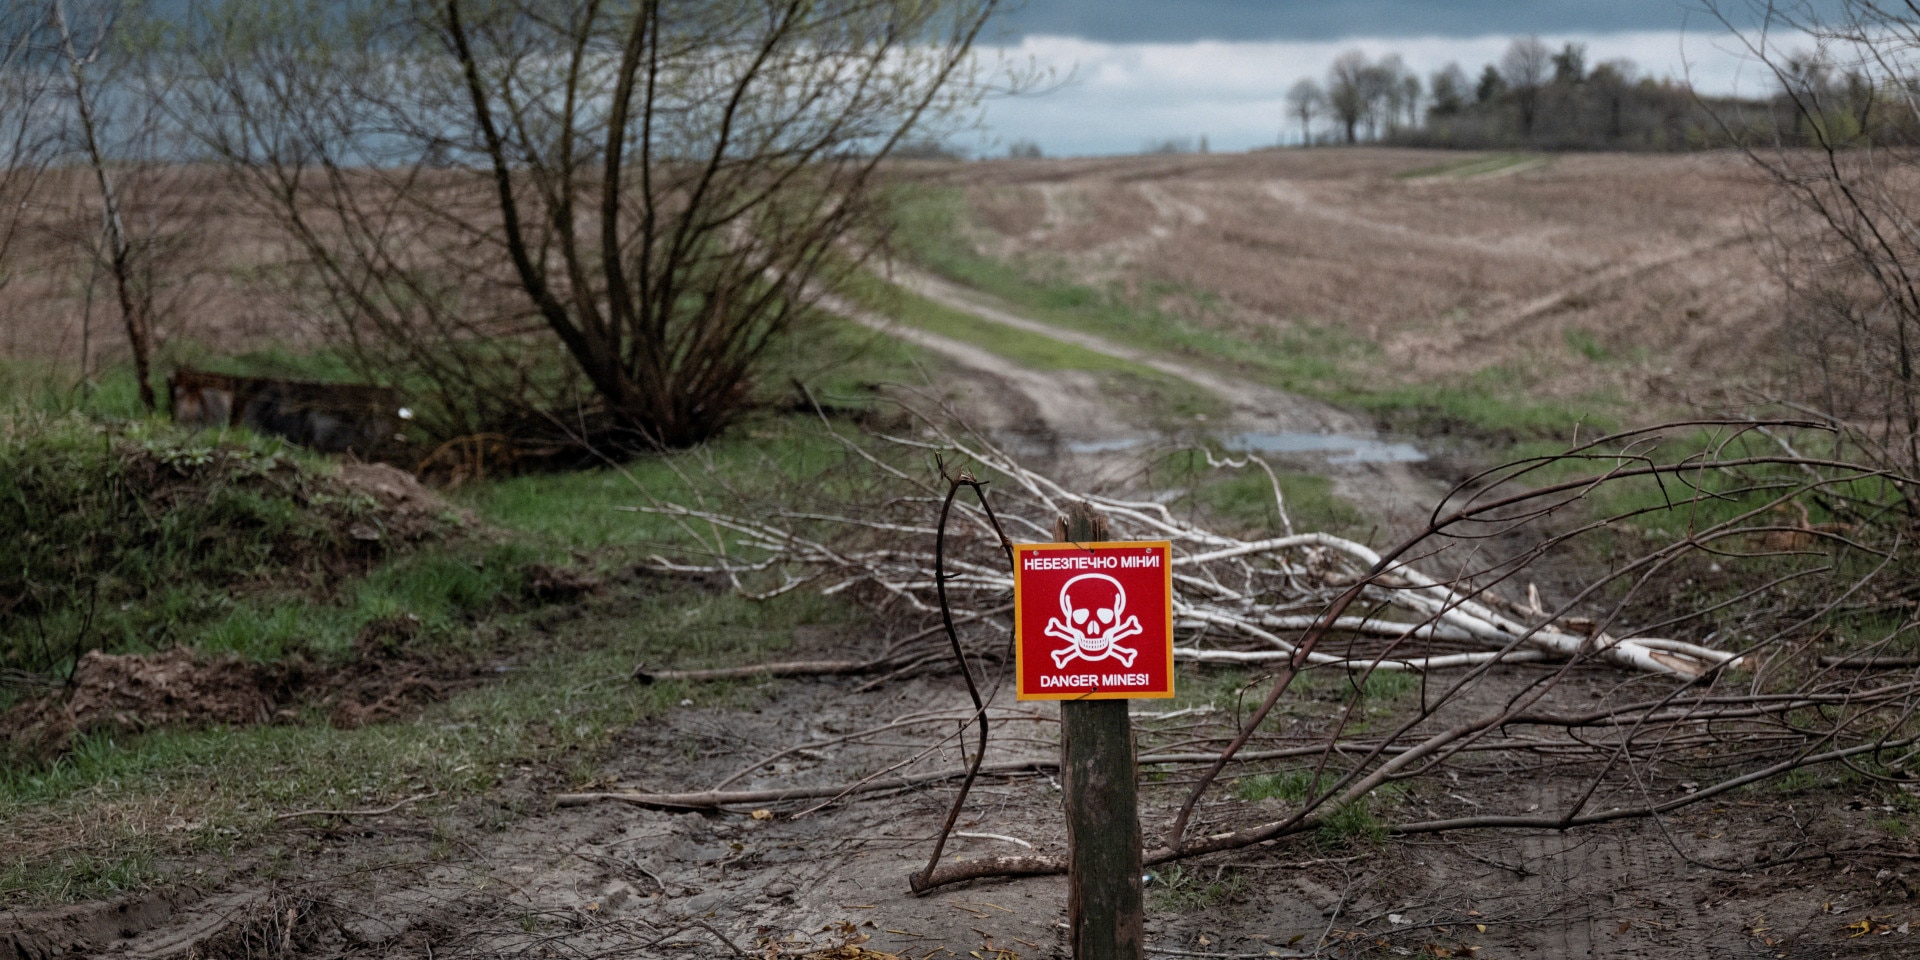 Ein rotes Schild mit einem Totenkopf steht auf einem Weg und warnt vor einem Minenfeld.